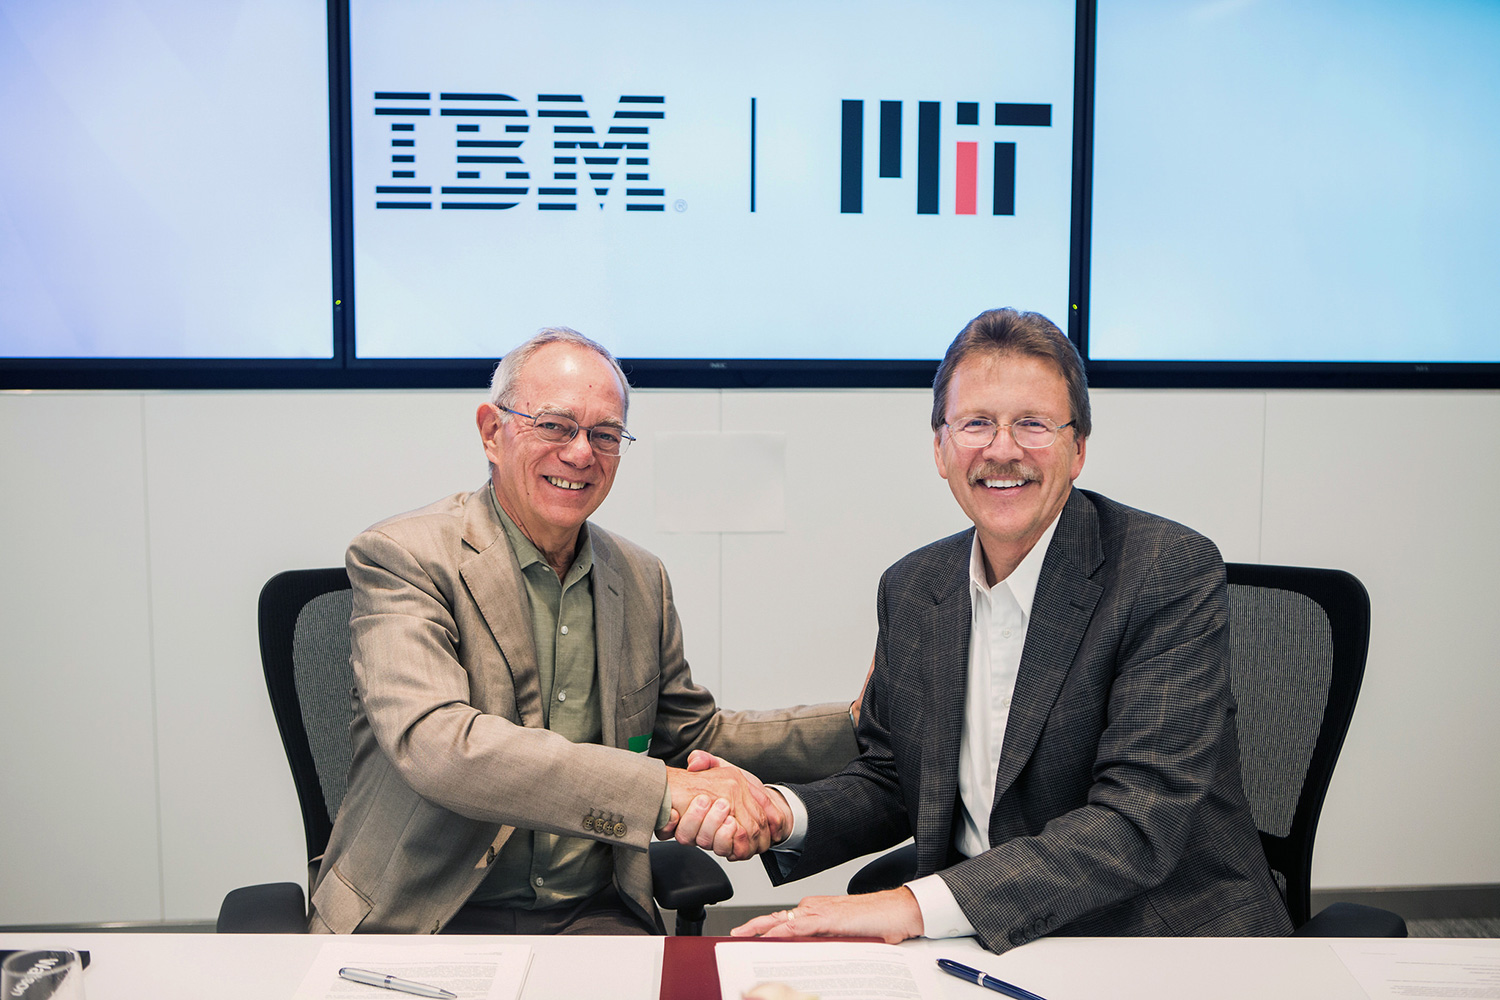 ibm and mit partnership handshake